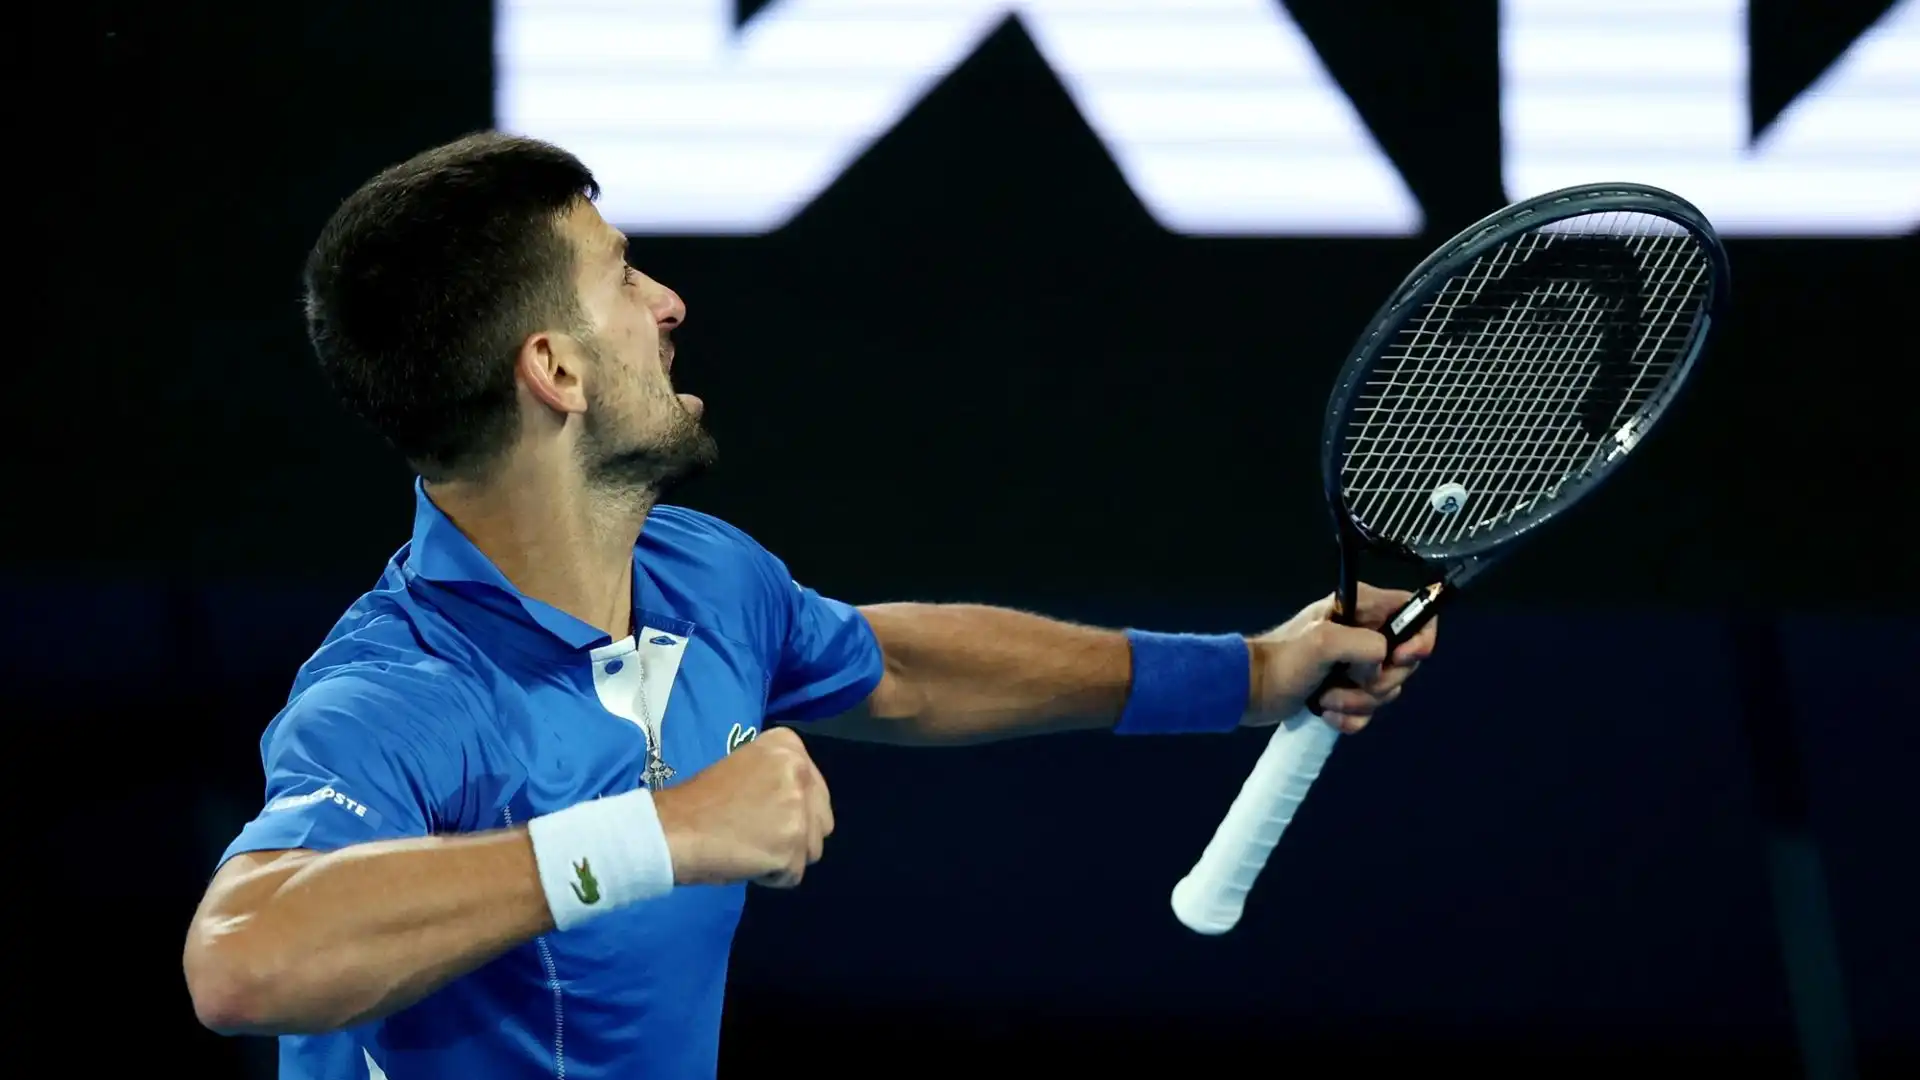 Dopo aver vinto il primo set, Djokovic comincia a soffrire il servizio potente dell'australiano e perde il secondo